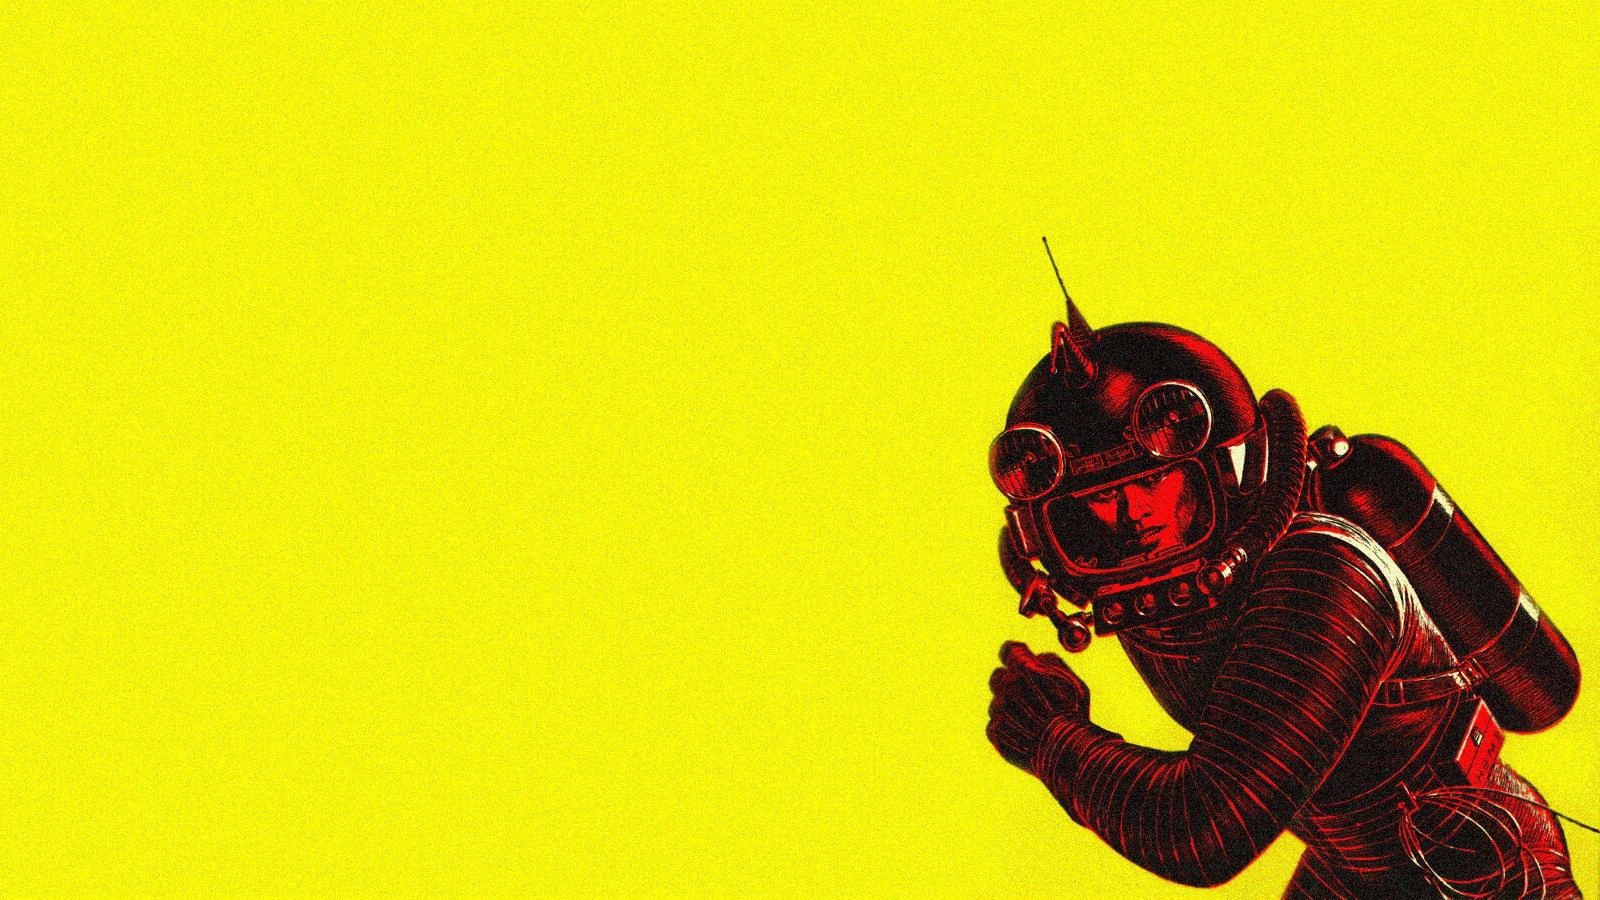 retro space wallpaper,rot,gelb,erfundener charakter,illustration,superheld